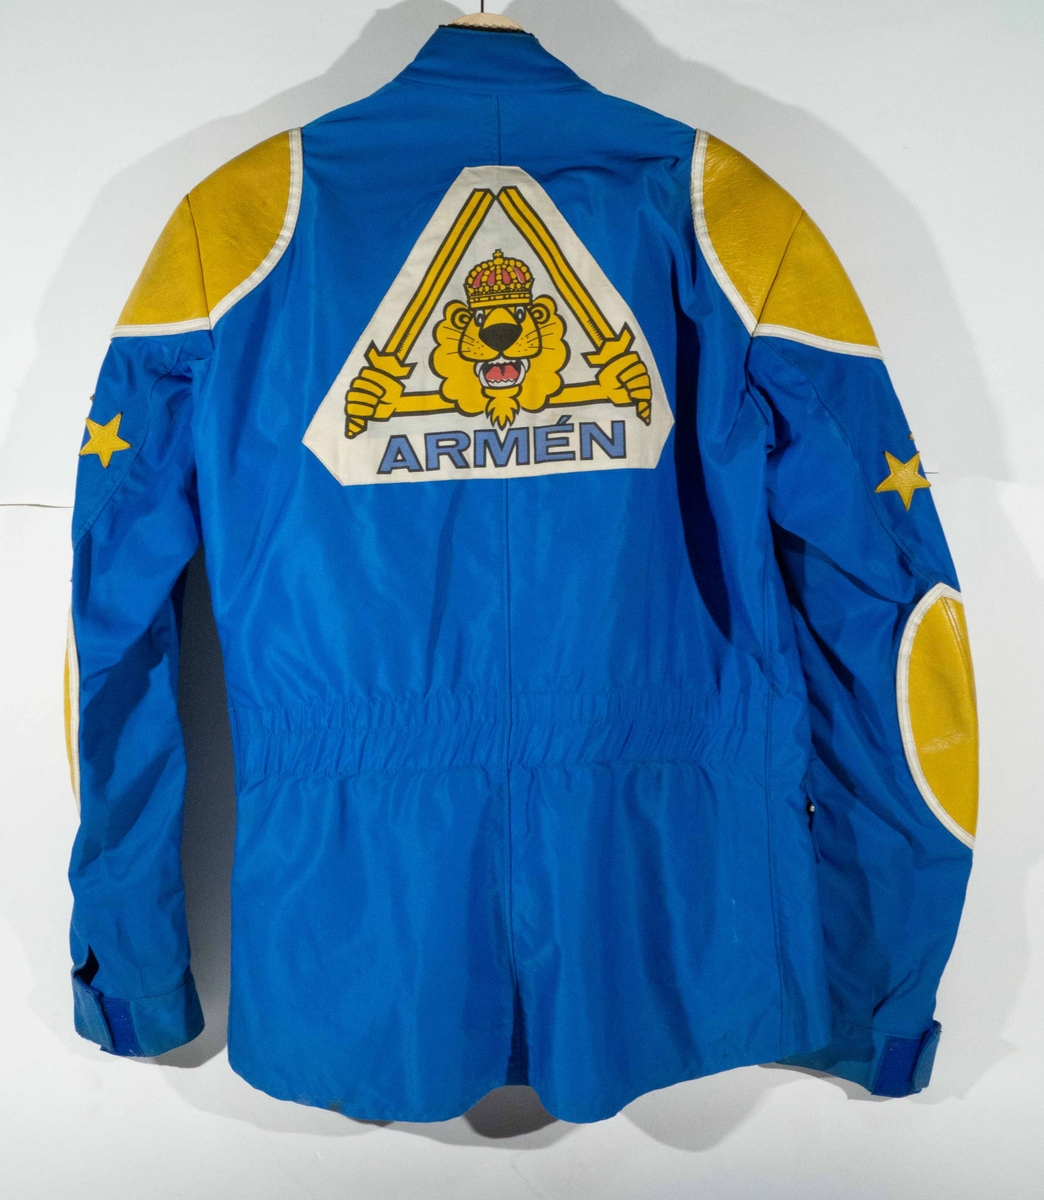 Mellanblå MC-ställ med gula och vita detaljer. På vänster sida av bröstet på jackan "H AB Malugn Sweden"  och på höger sida ett trekantigt märke "Armén".  På ryggen ett stort trekantigt märke "Armén". På byxorna "Arméns Lejon".